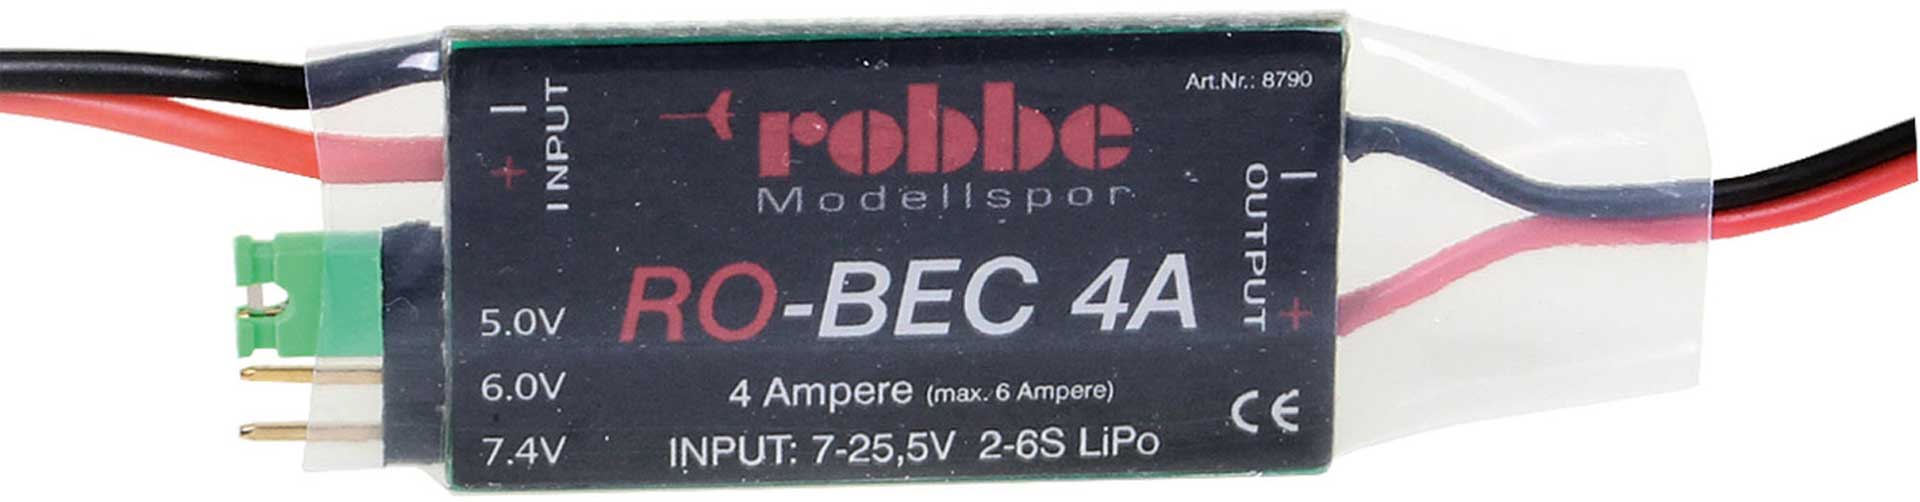 Robbe Modellsport RO-BEC 4A EMPFÄNGERSTROMVERSORGUNG